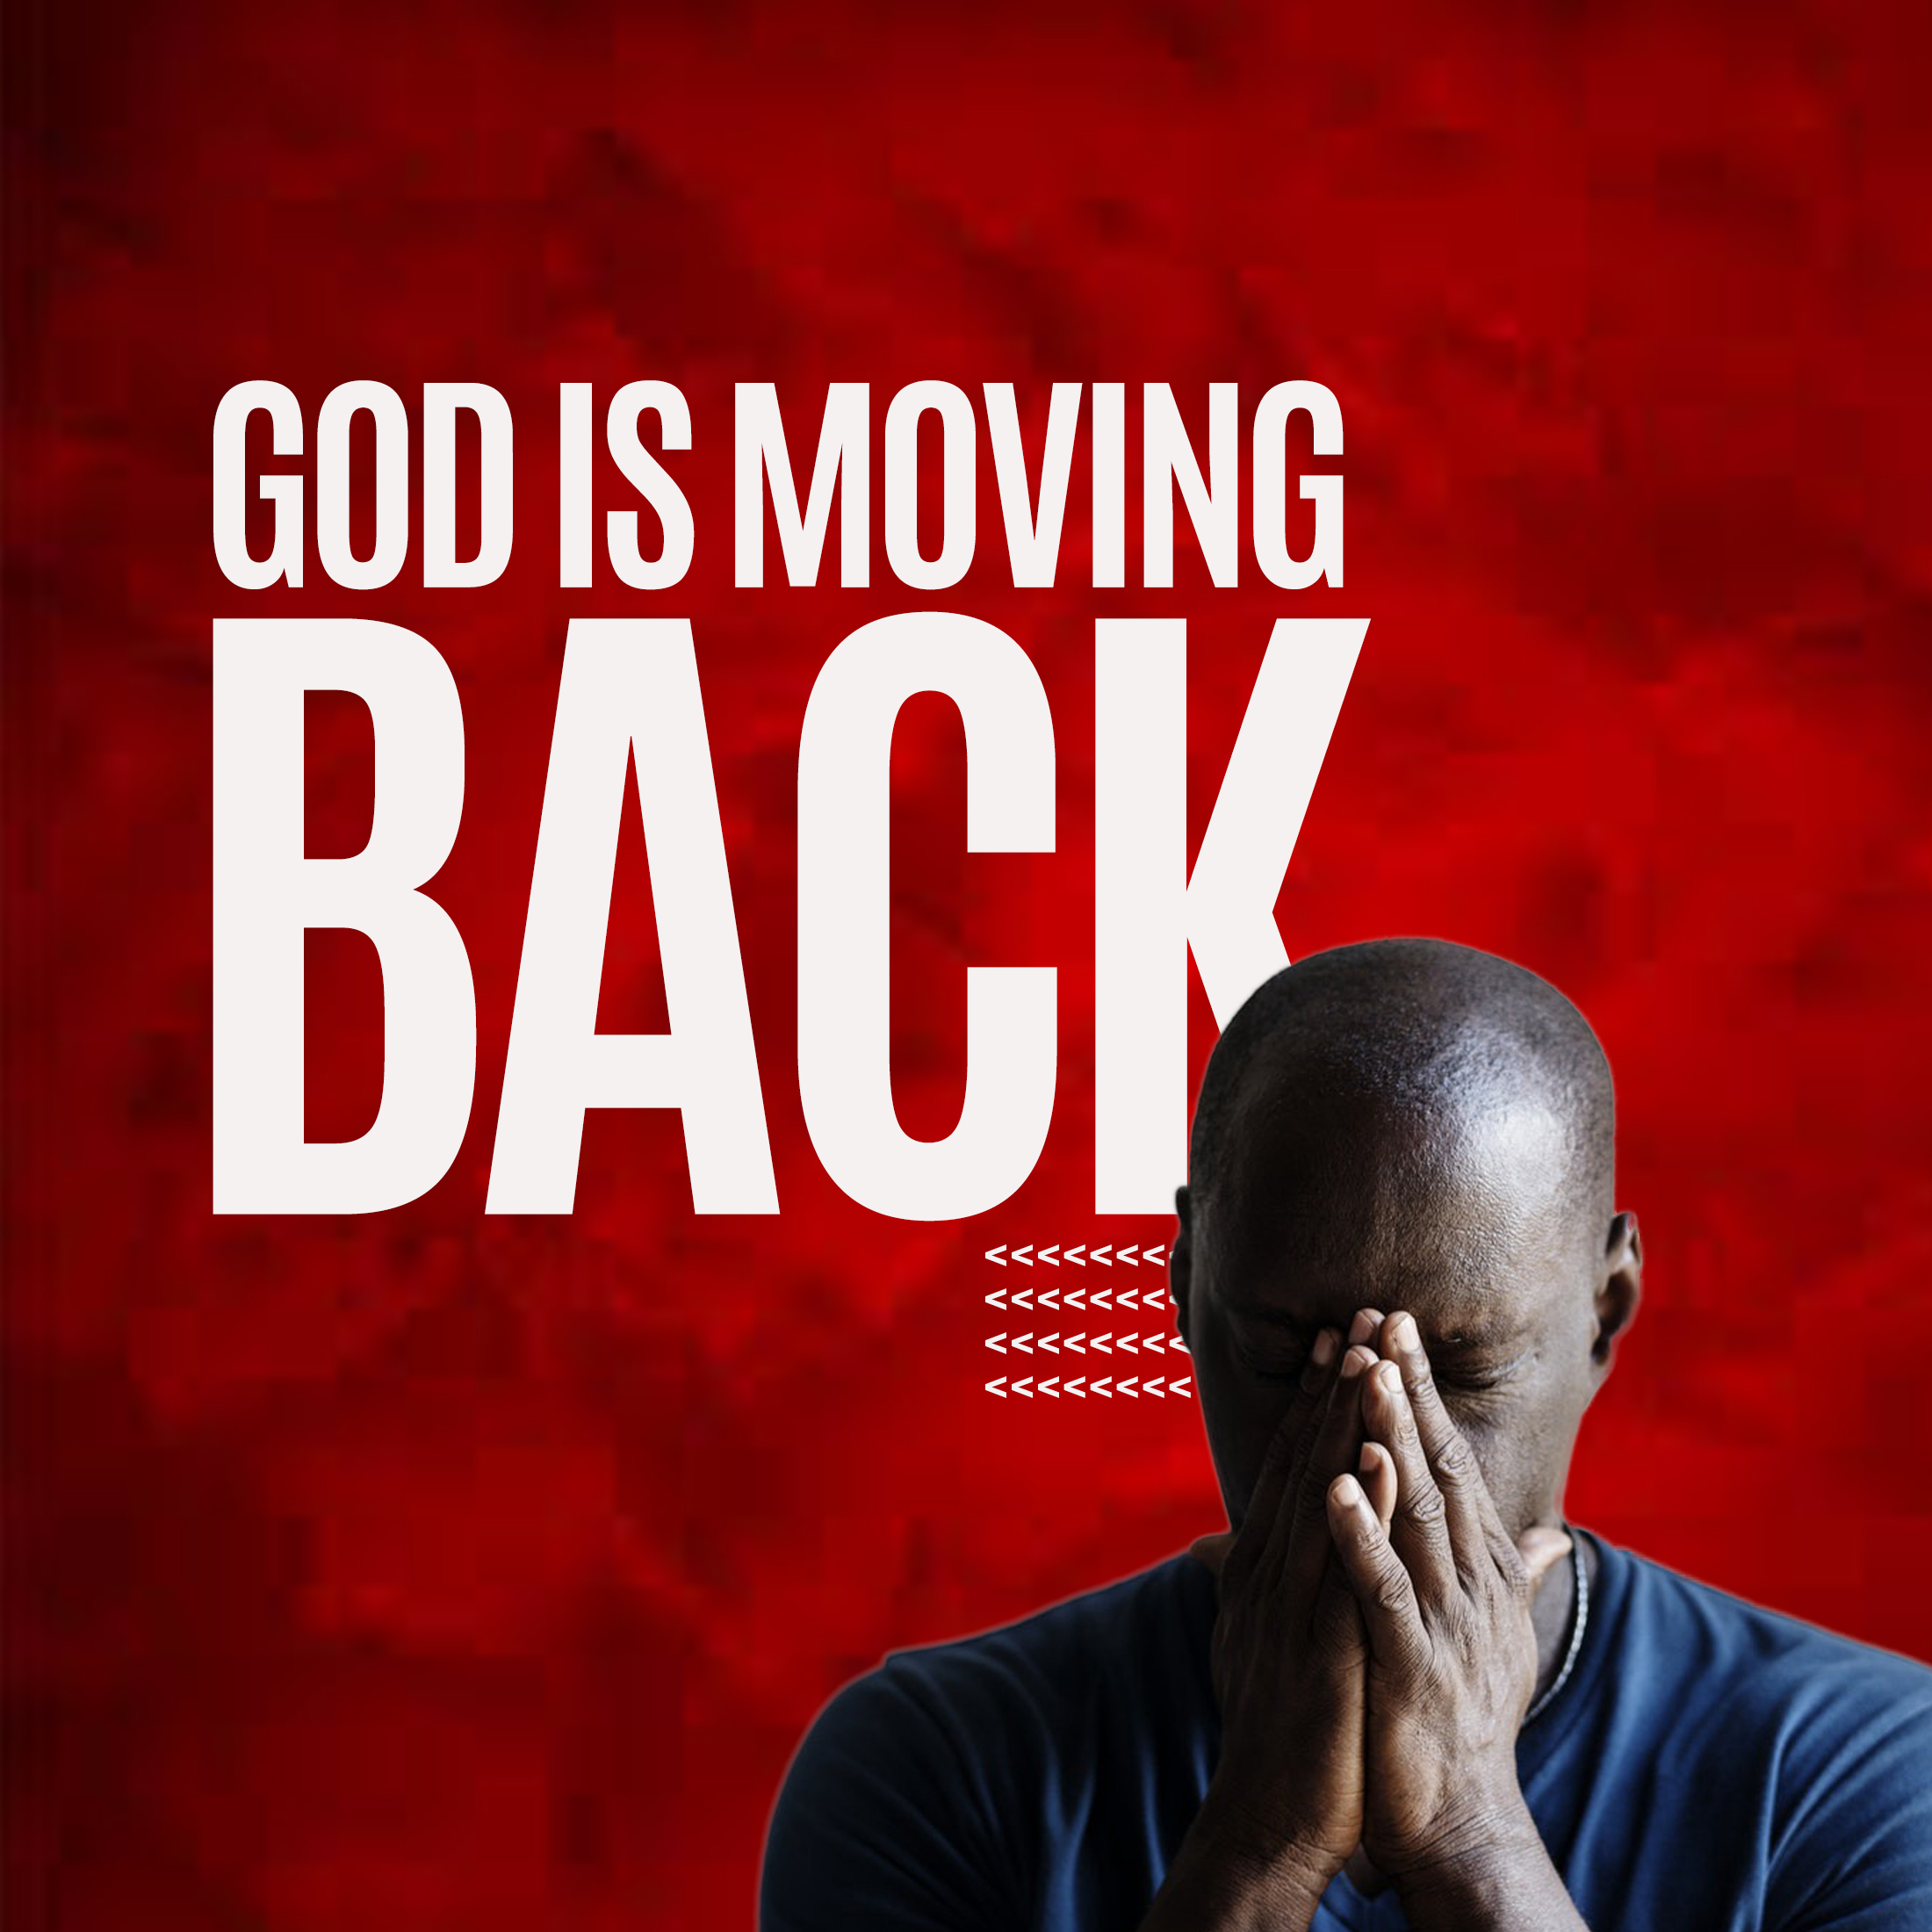 God Is Moving Back!